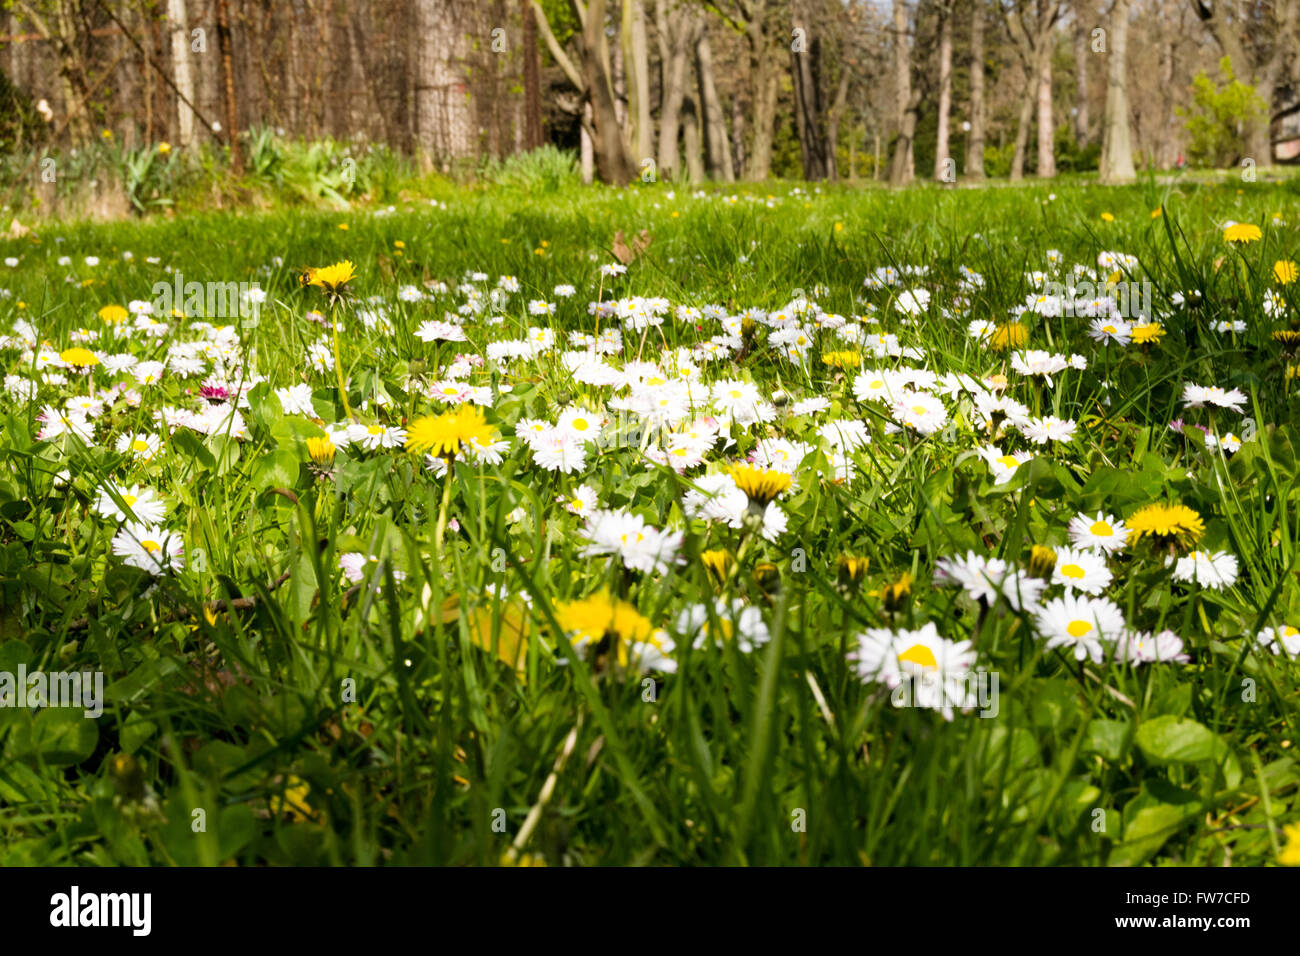 Ein Landschaftsbild des Frühlings. Hergestellt von Low-Profile, detailliertere Informationen über das Leben der Blumen zu erhalten. Stockfoto